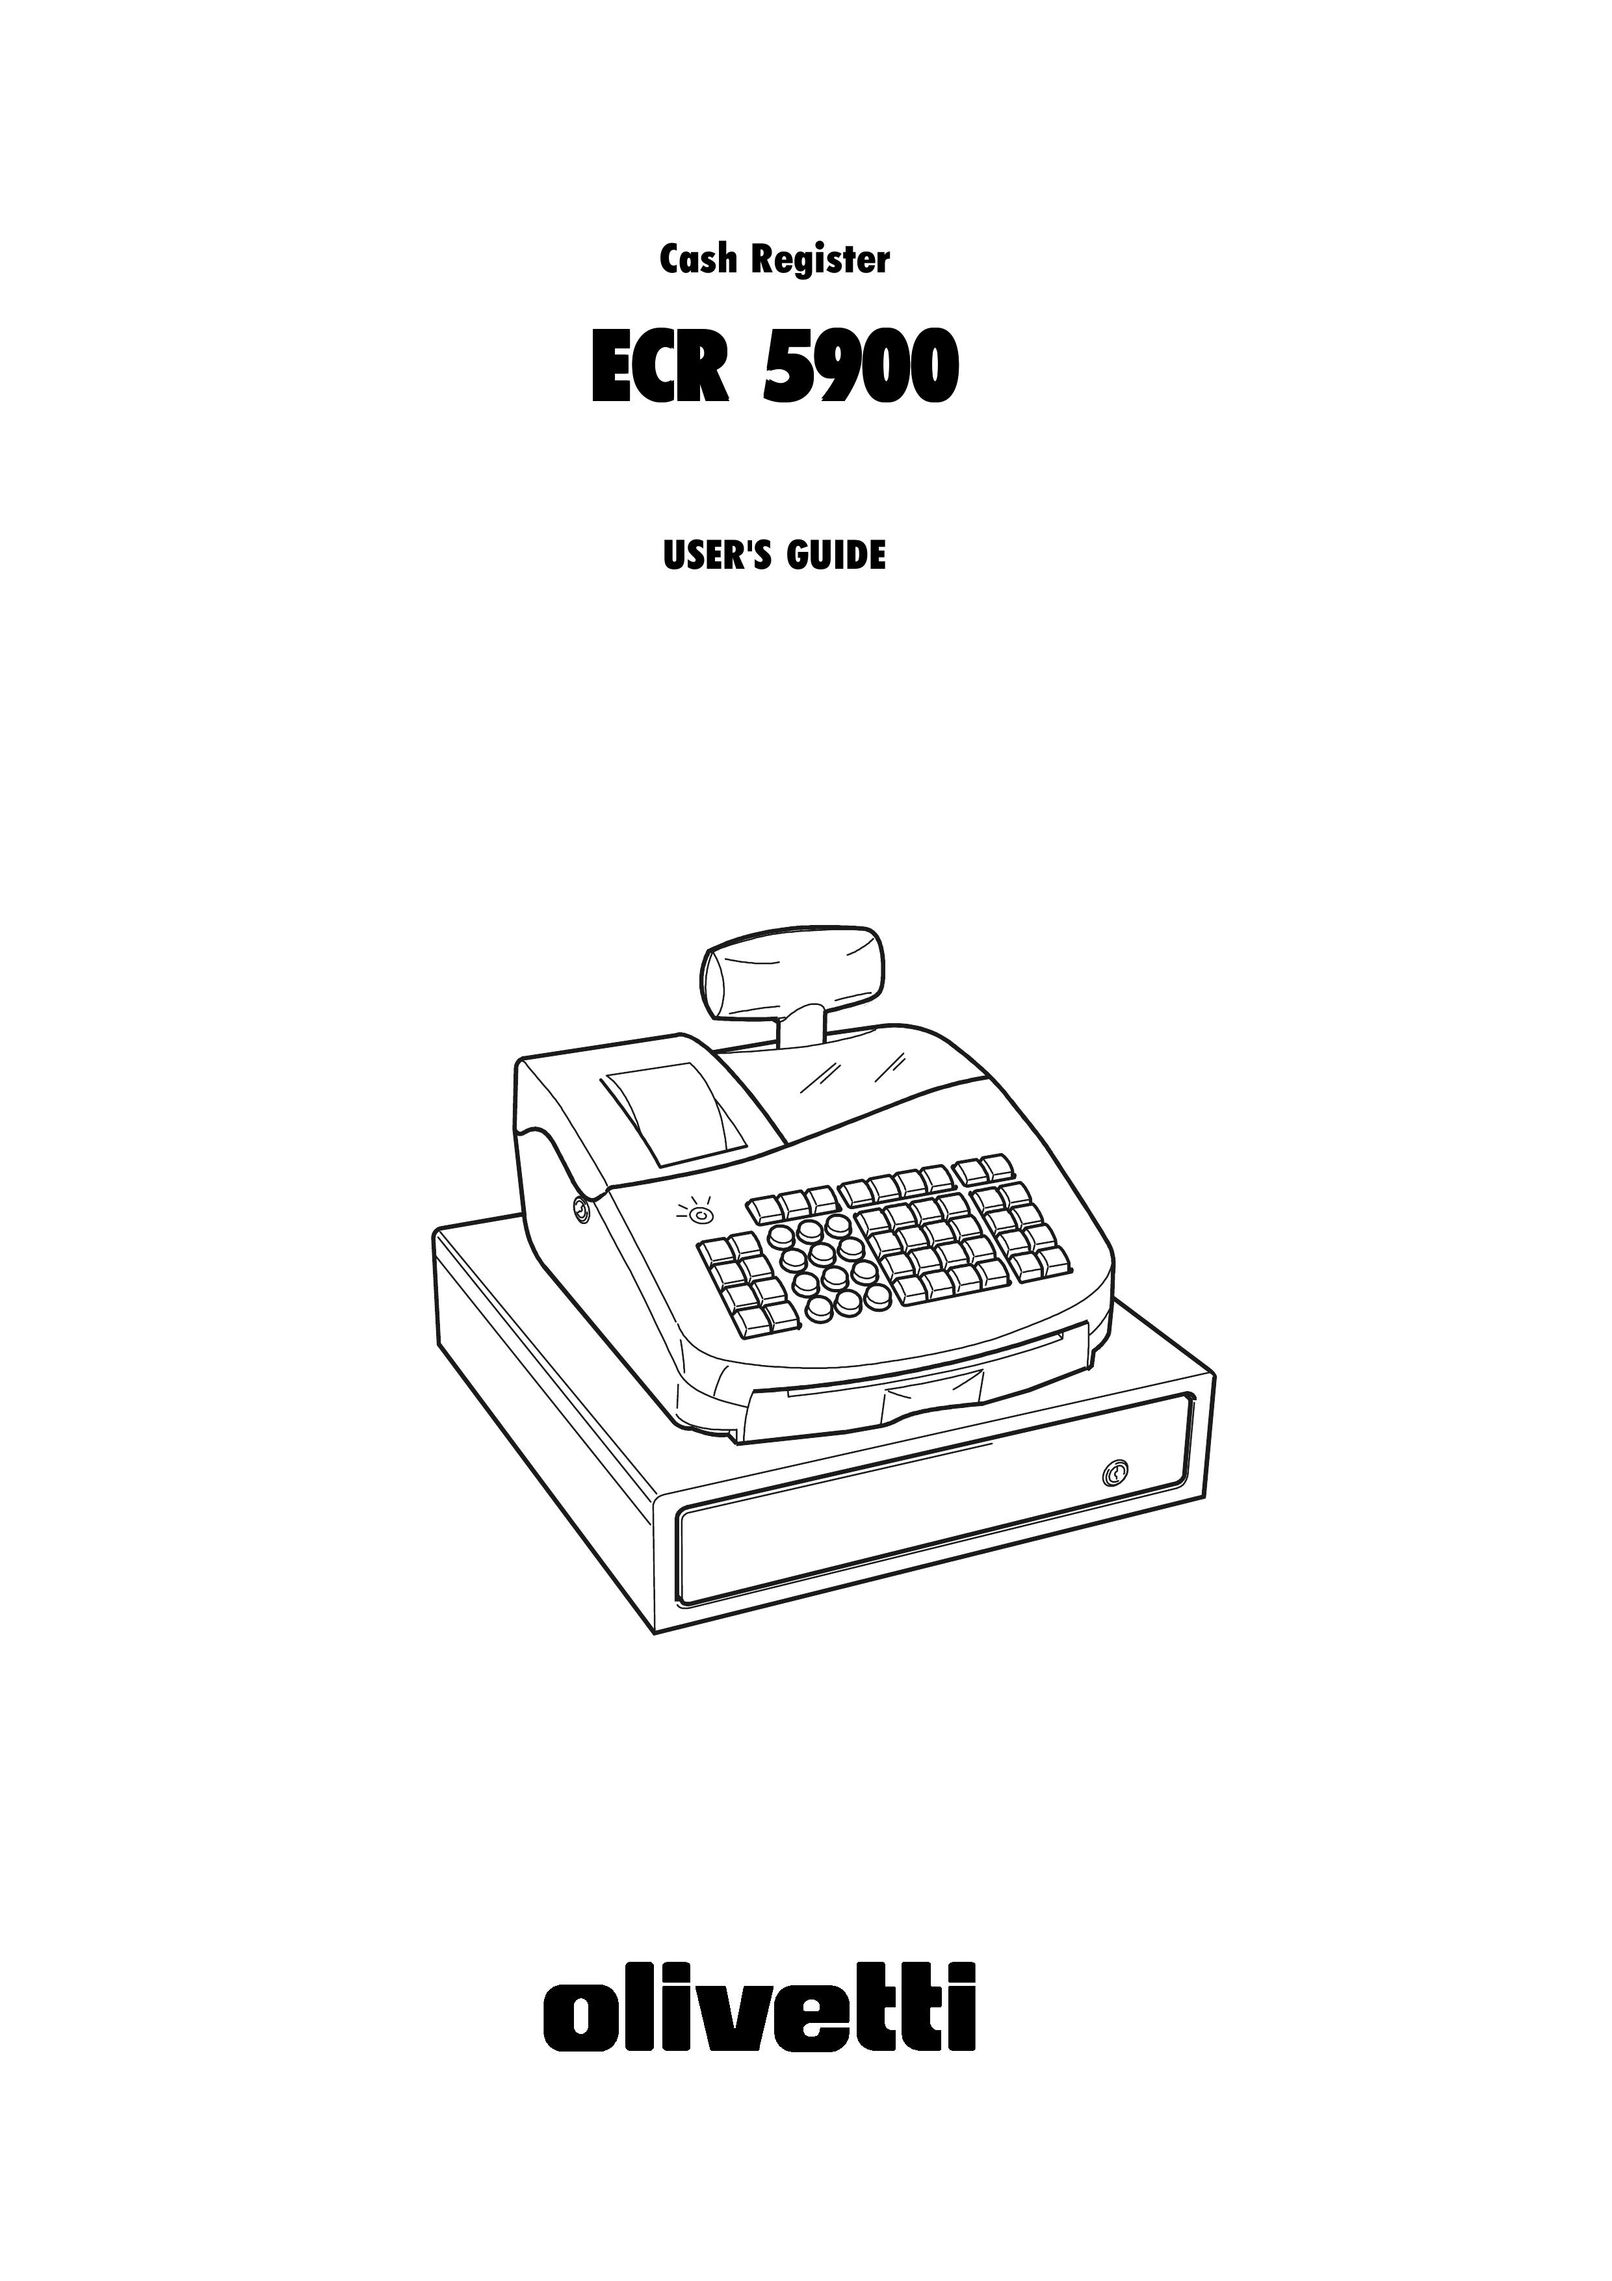 Olivetti ECR 5900 Cash Register User Manual